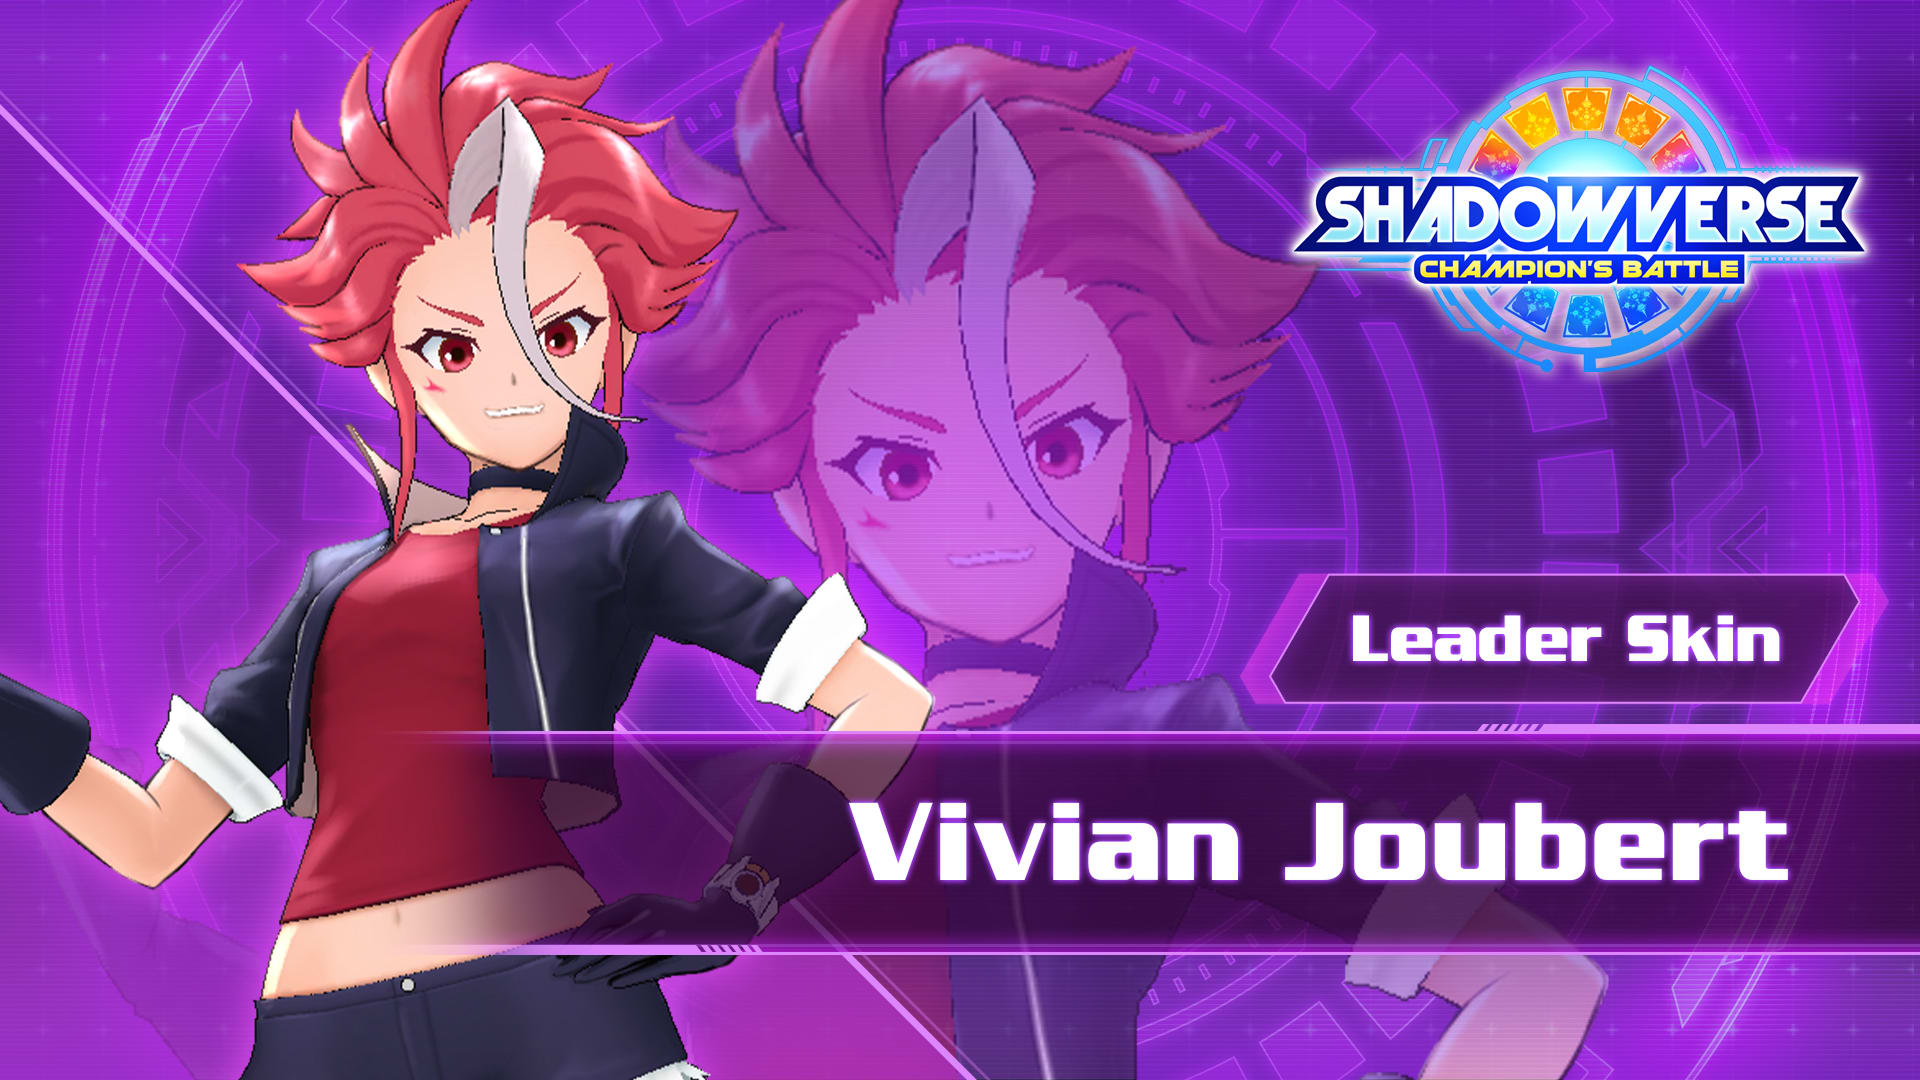 Leader Skin: "Vivian Joubert"